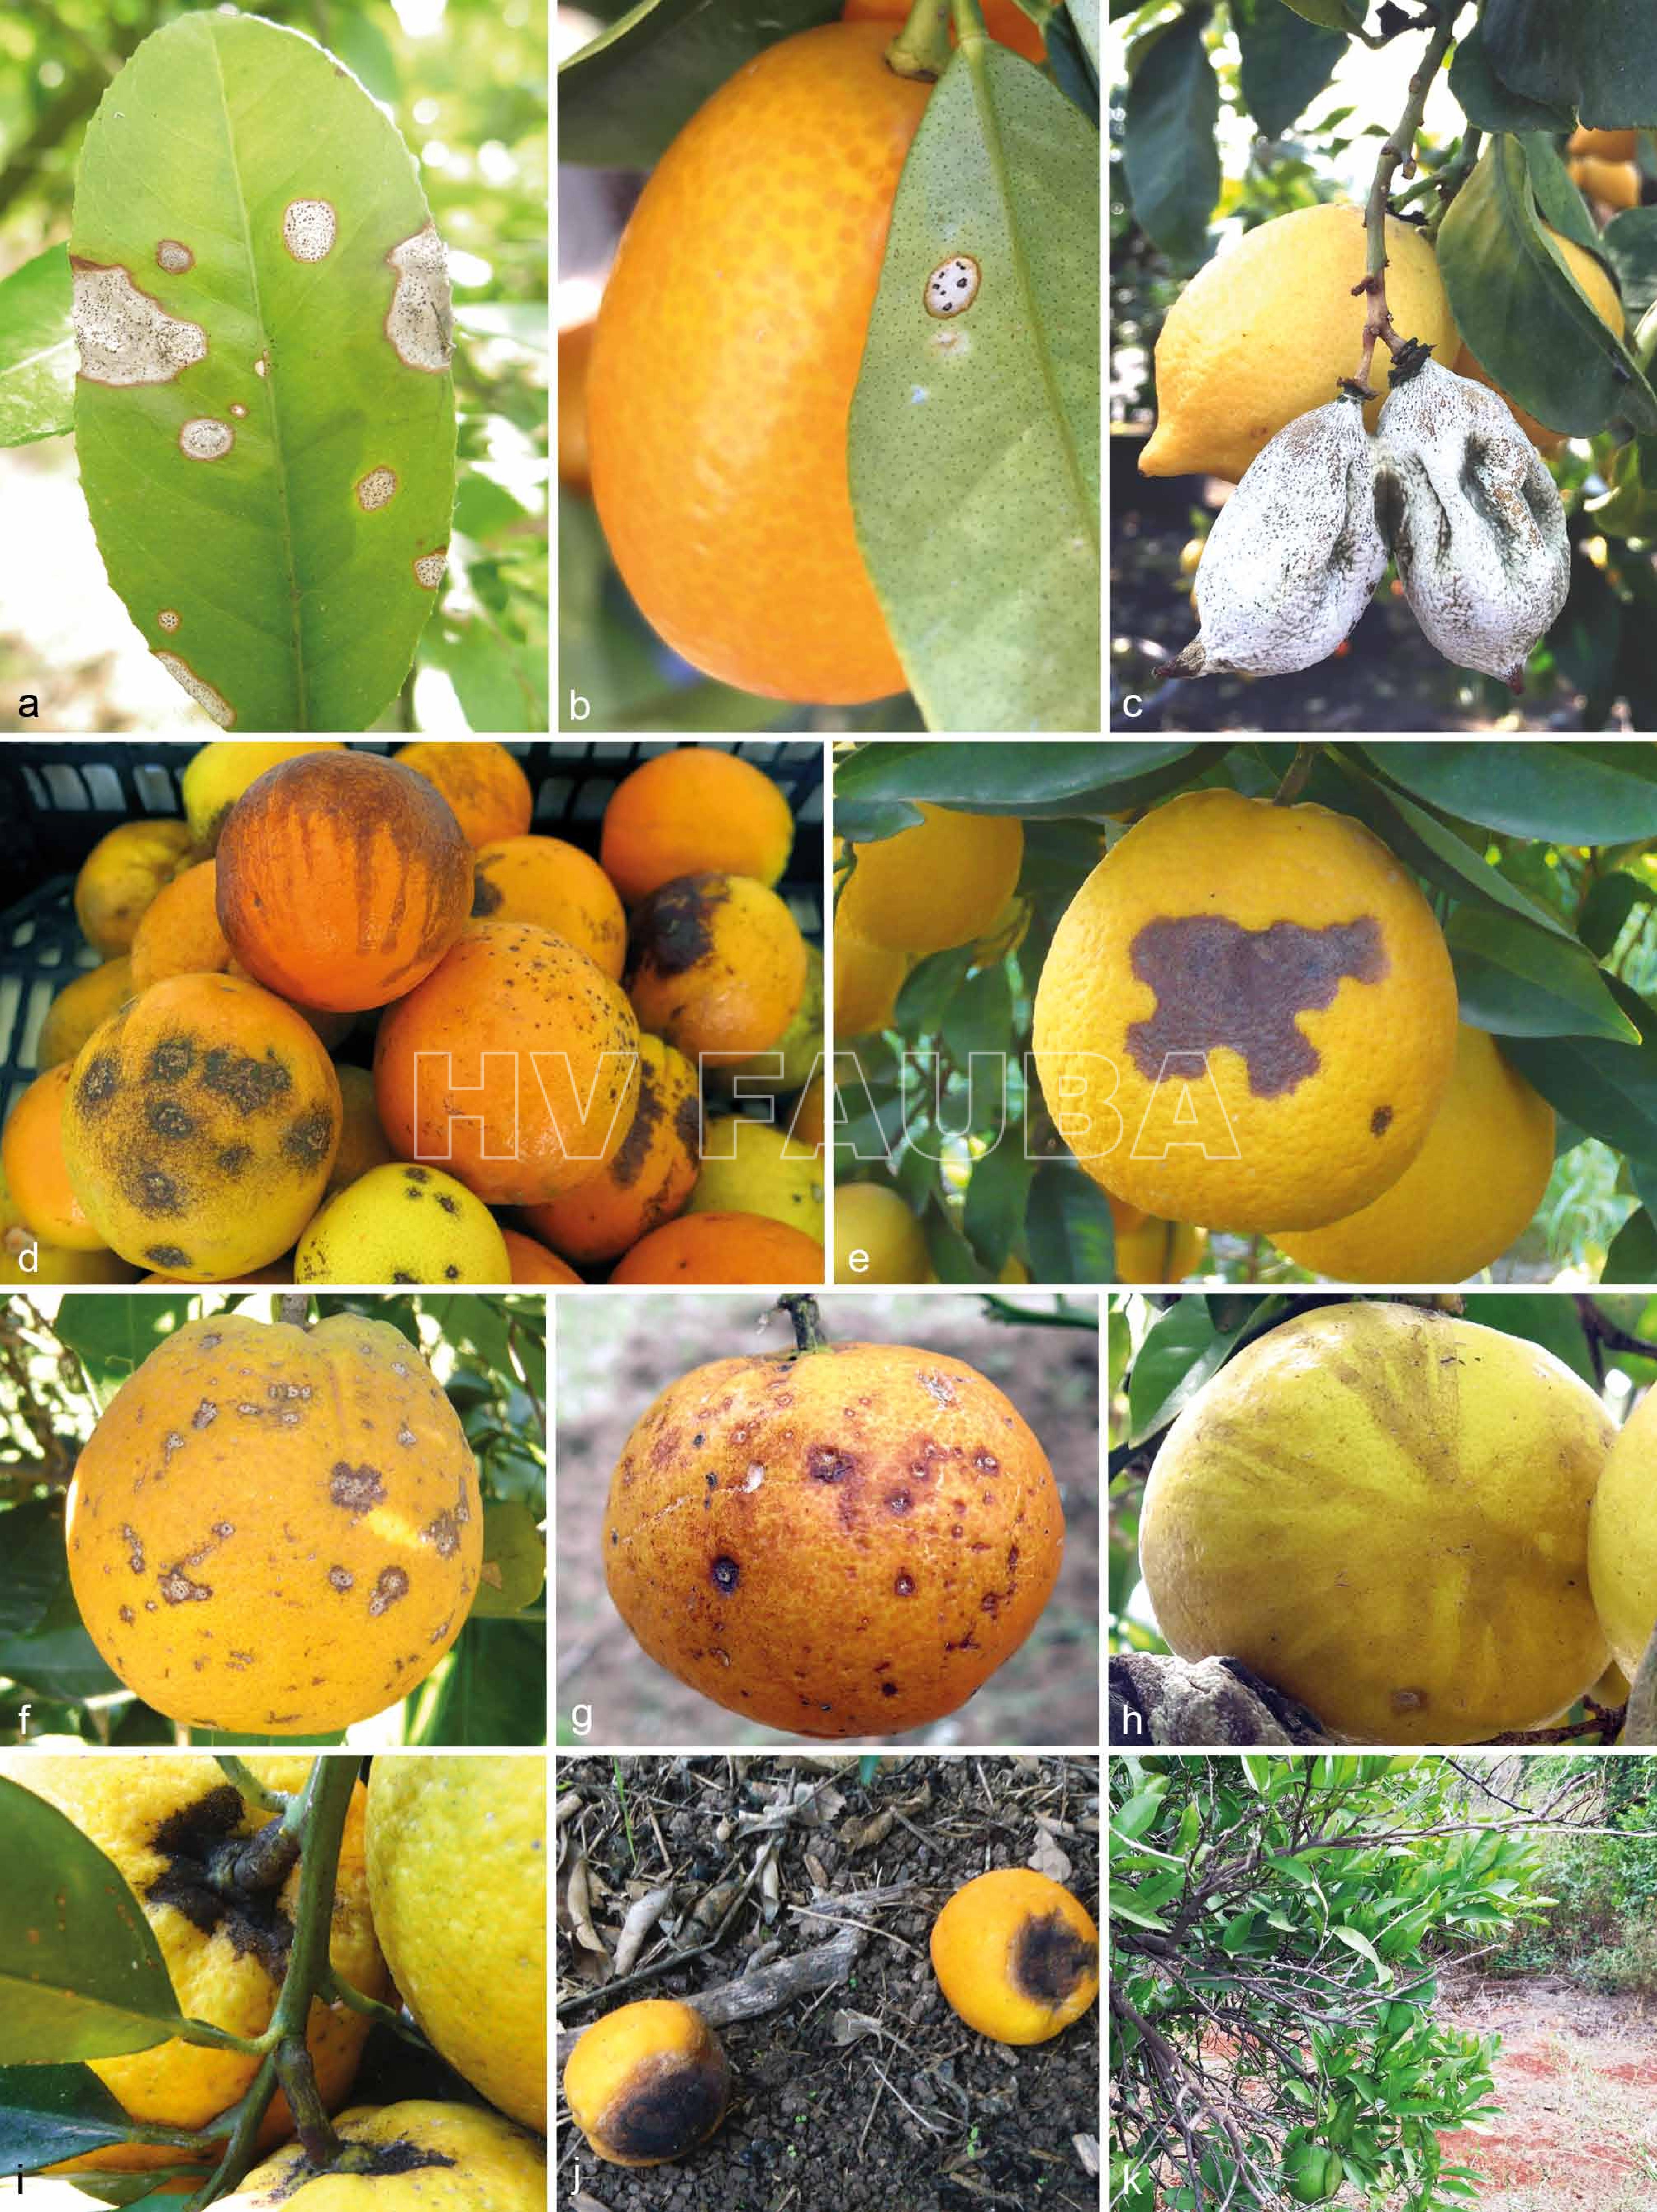 Síntomas de antracnosis en tejidos de cítricos (a – b) Síntomas de antracnosis en hojas naturalmente infectadas: a. Citrus bergamia y b. Fortunella margarita; (c) fruto momificado de Citrus limon; (d – g) varios síntomas en frutos: (d) diversas lesiones y (e – f) lesiones hundidas en naranja y (g) en mandarina; (h) mancha de lágrima en pomelo; (I) pudrición del tallo en naranja; (j) antracnosis típica en frutos de naranja caídos; (k) punta marchita del árbol Citrus sinensis. Autor: Guarnaccia et al., 2017